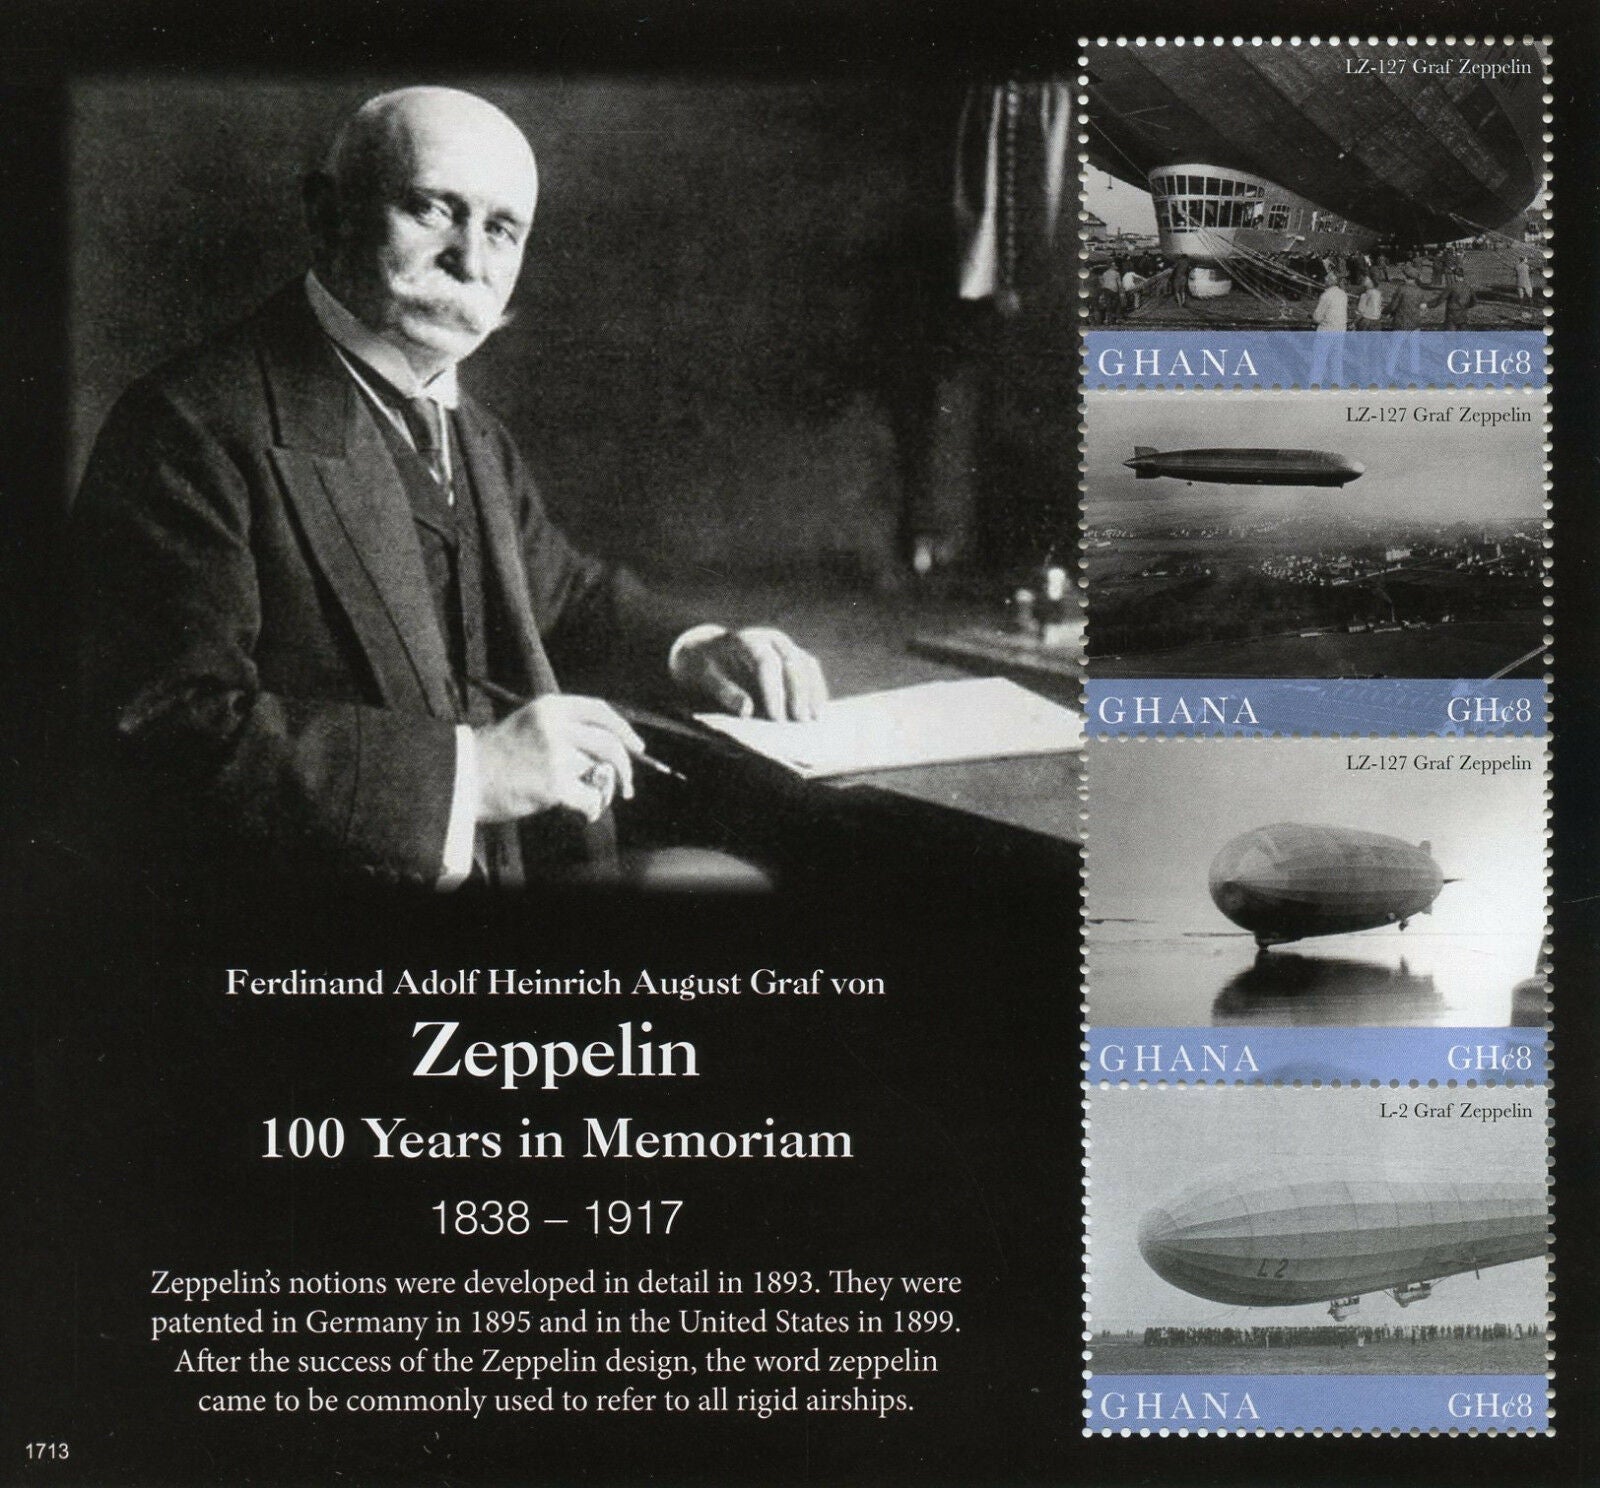 Ghana 2017 MNH Graf von Zeppelin 100th Mem 4v M/S Zeppelins Aviation Stamps